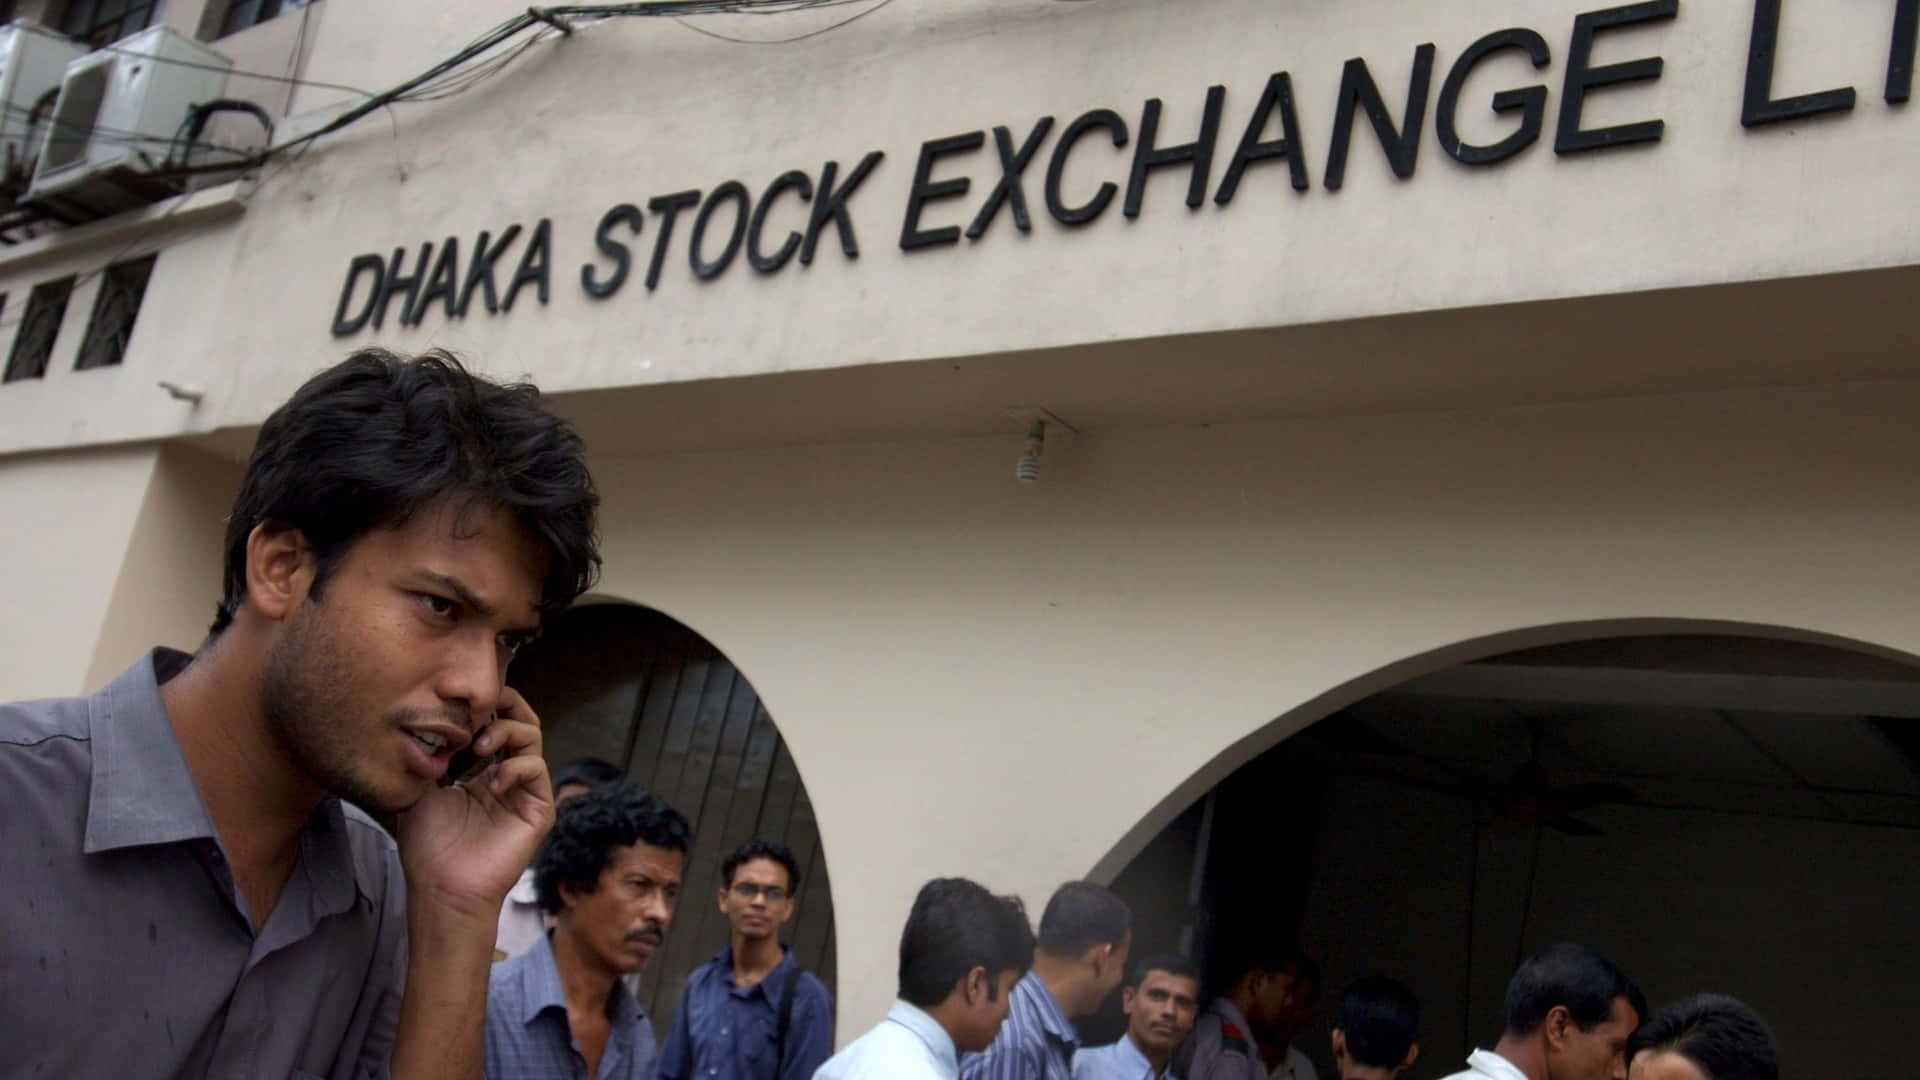 Dhaka Stock Exchange pictures